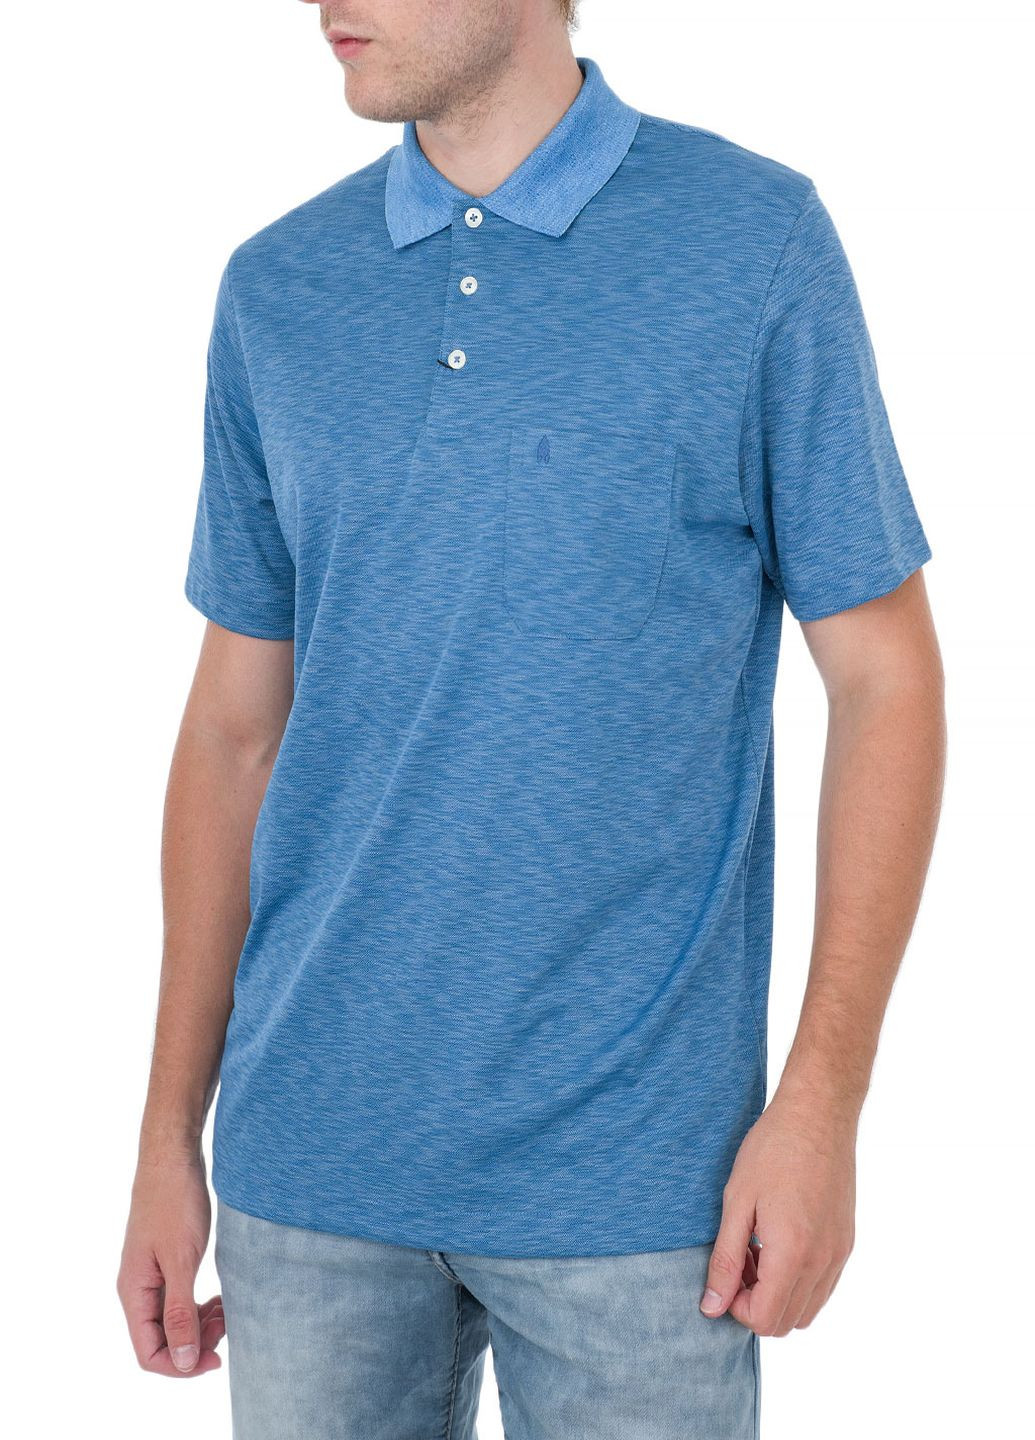 Синяя футболка-поло для мужчин Ragman в полоску